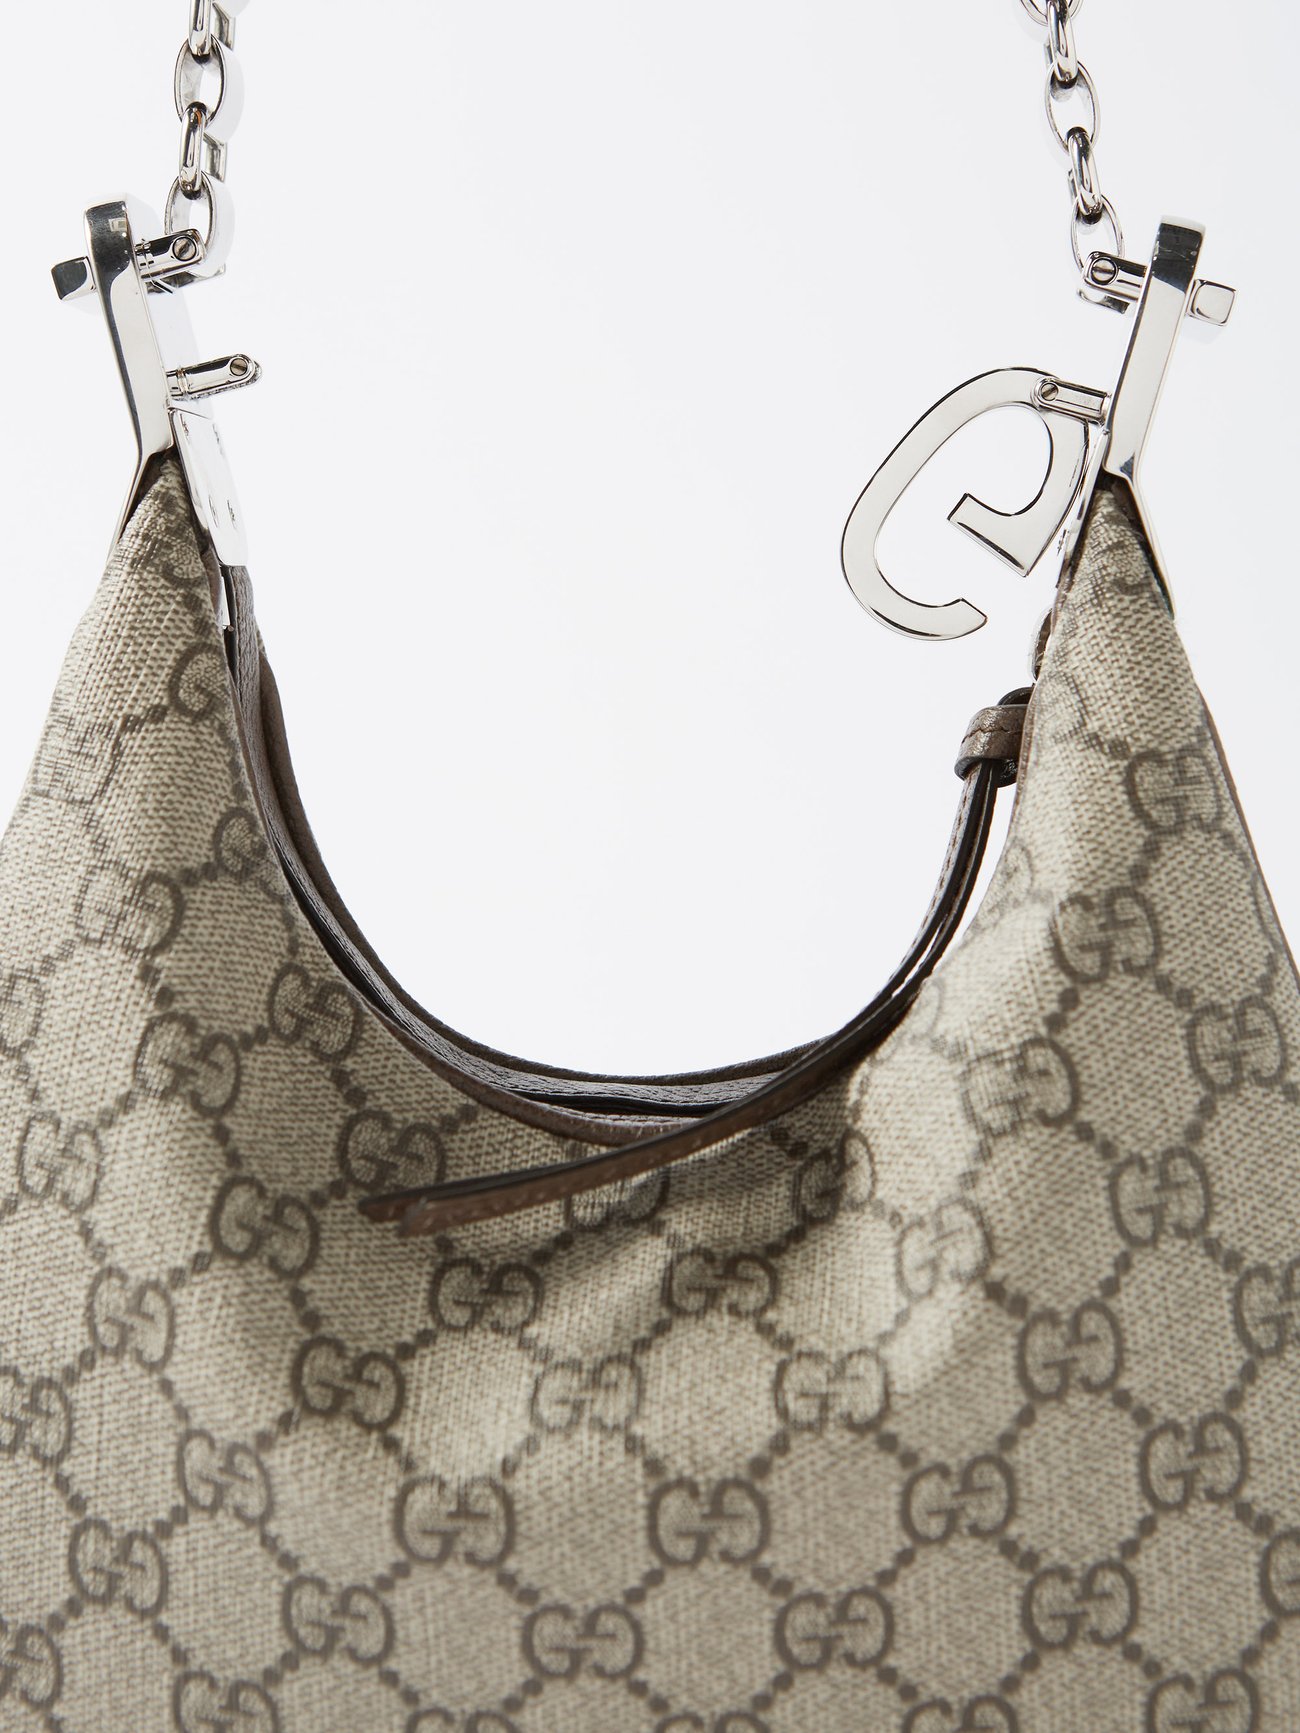 Gucci Attache small shoulder bag in beige and blue Supreme